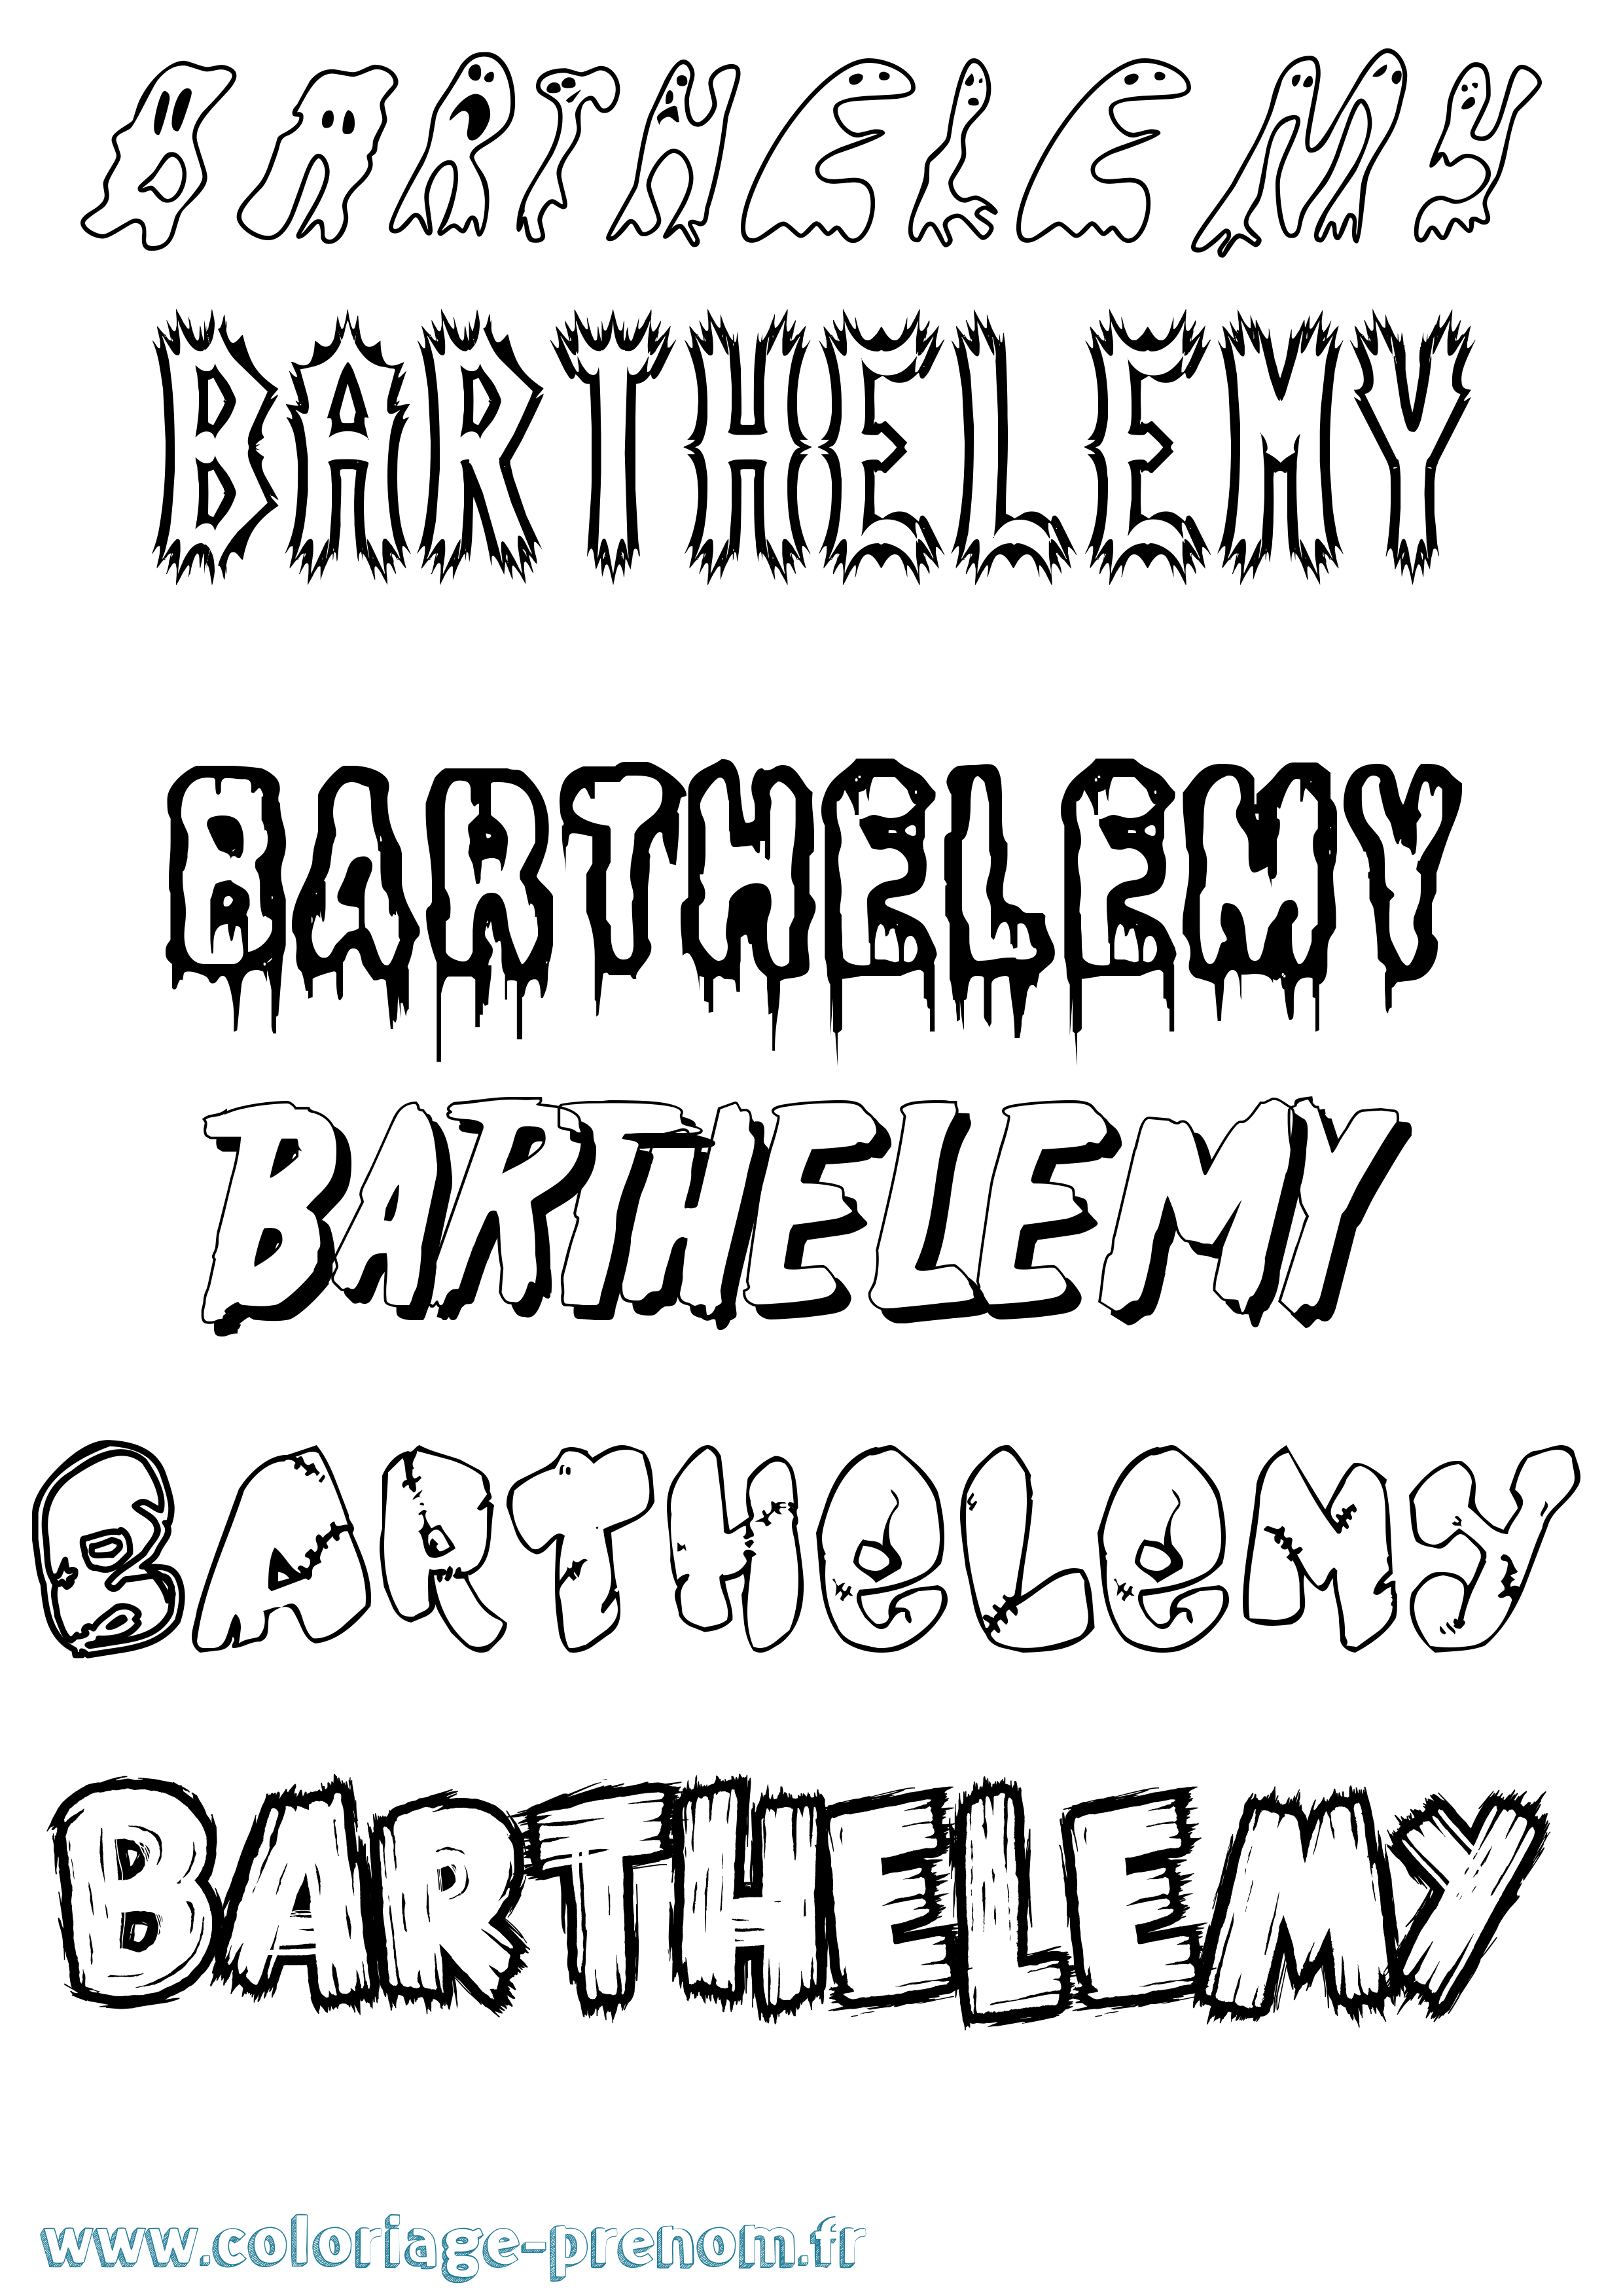 Coloriage prénom Barthelemy